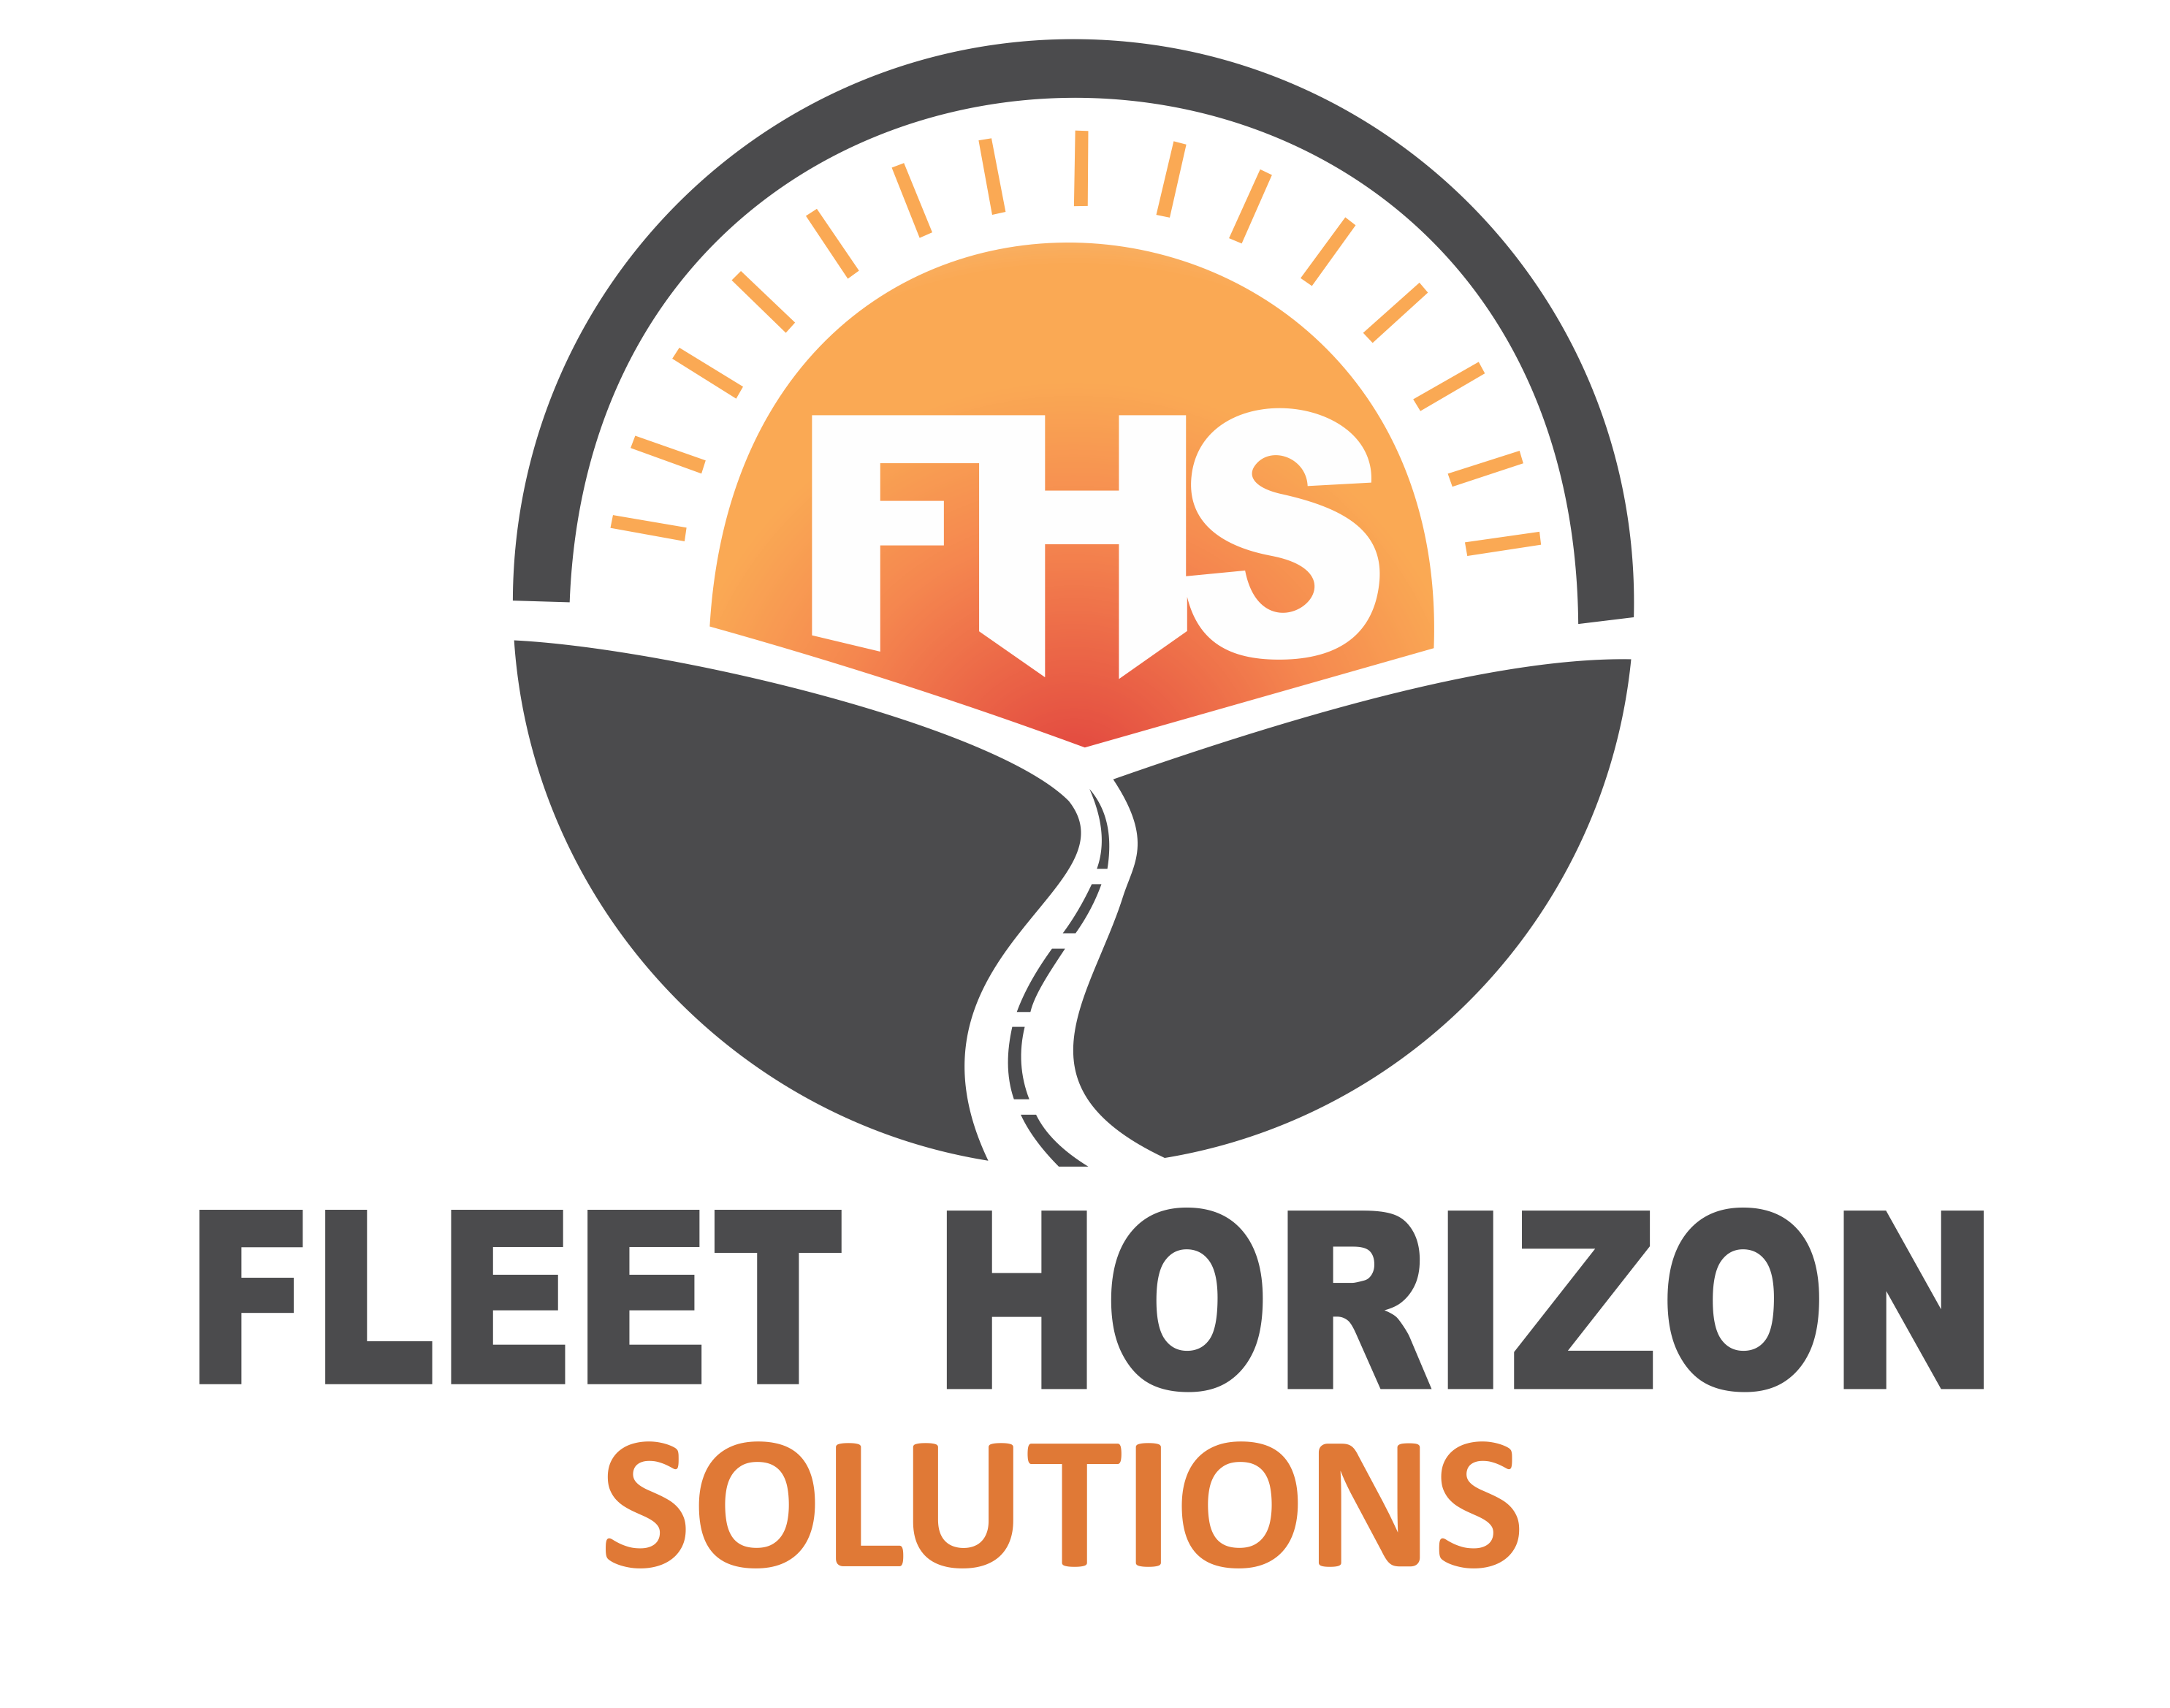 Fleet Horizon Solutions